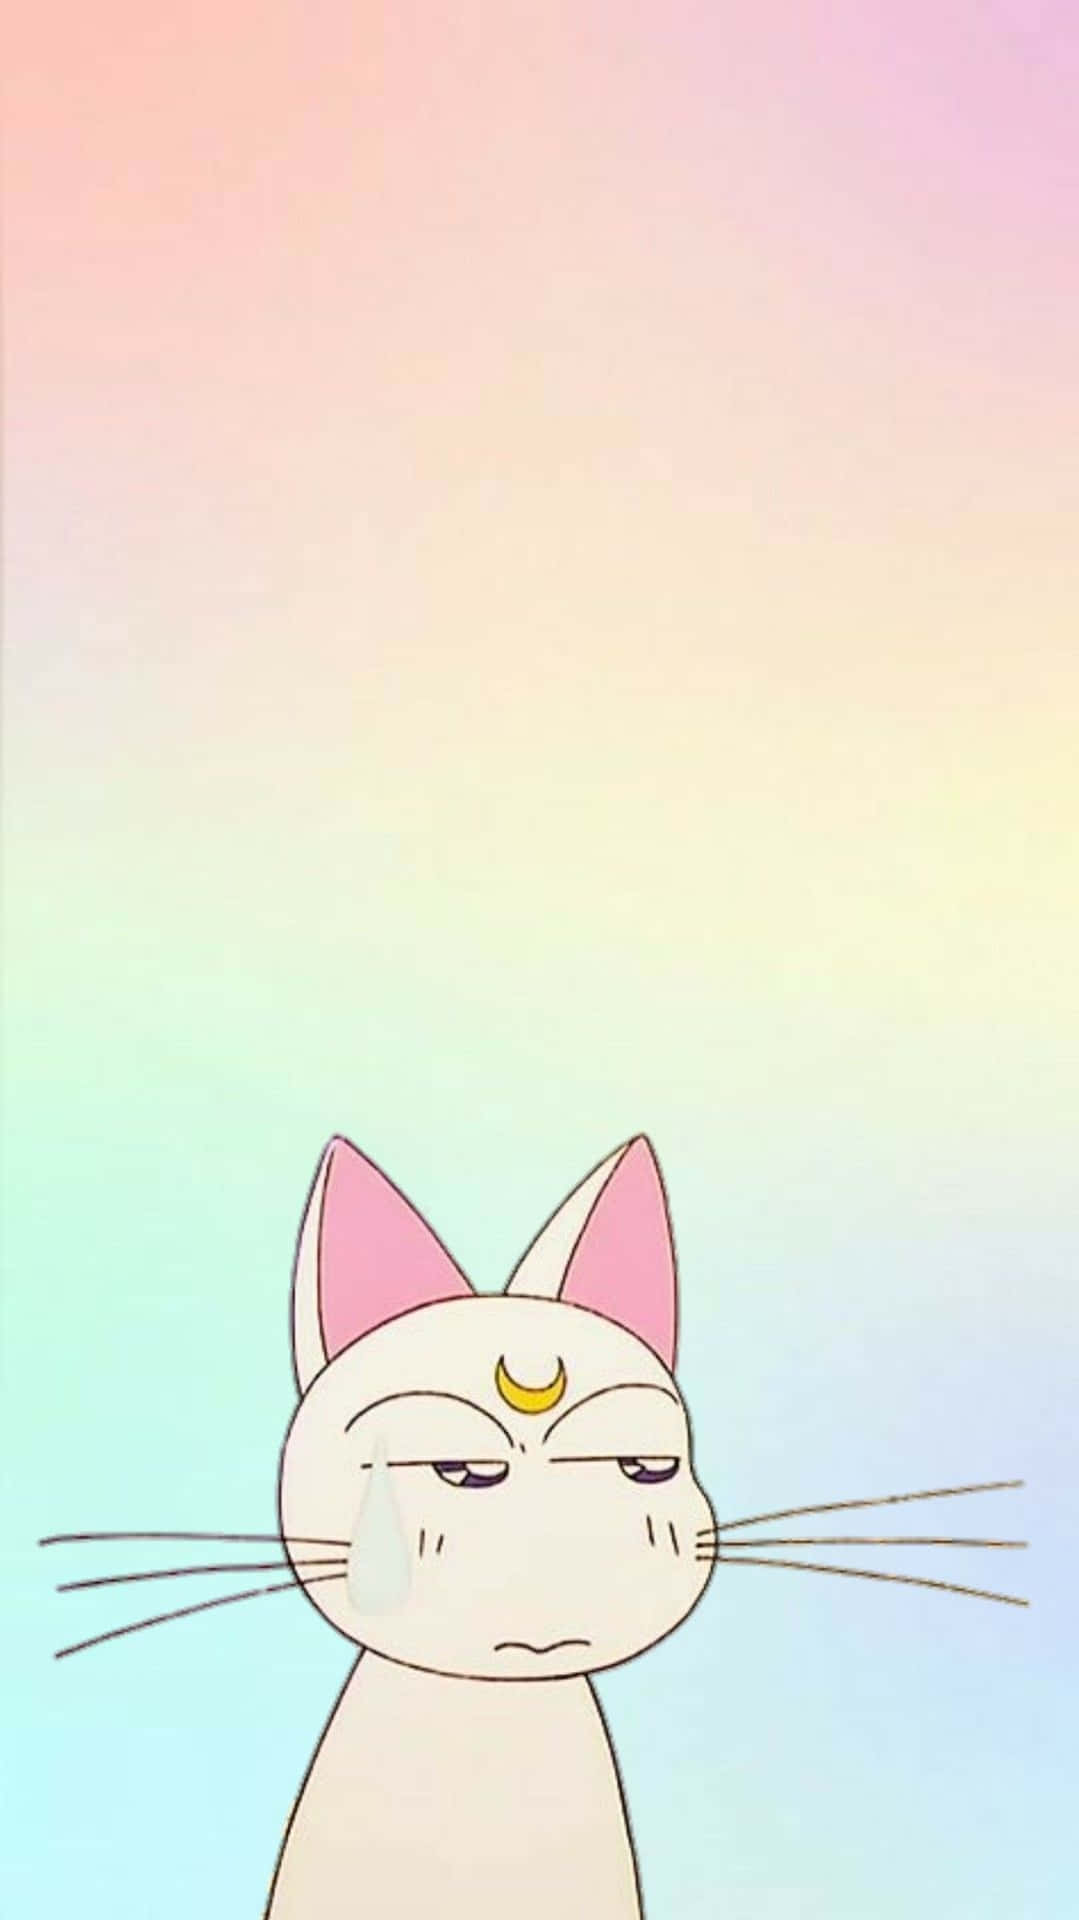 Fondode Pantalla Pastel De Sailor Moon Con El Gato Artemis, Arcoíris Y Degradado. Fondo de pantalla